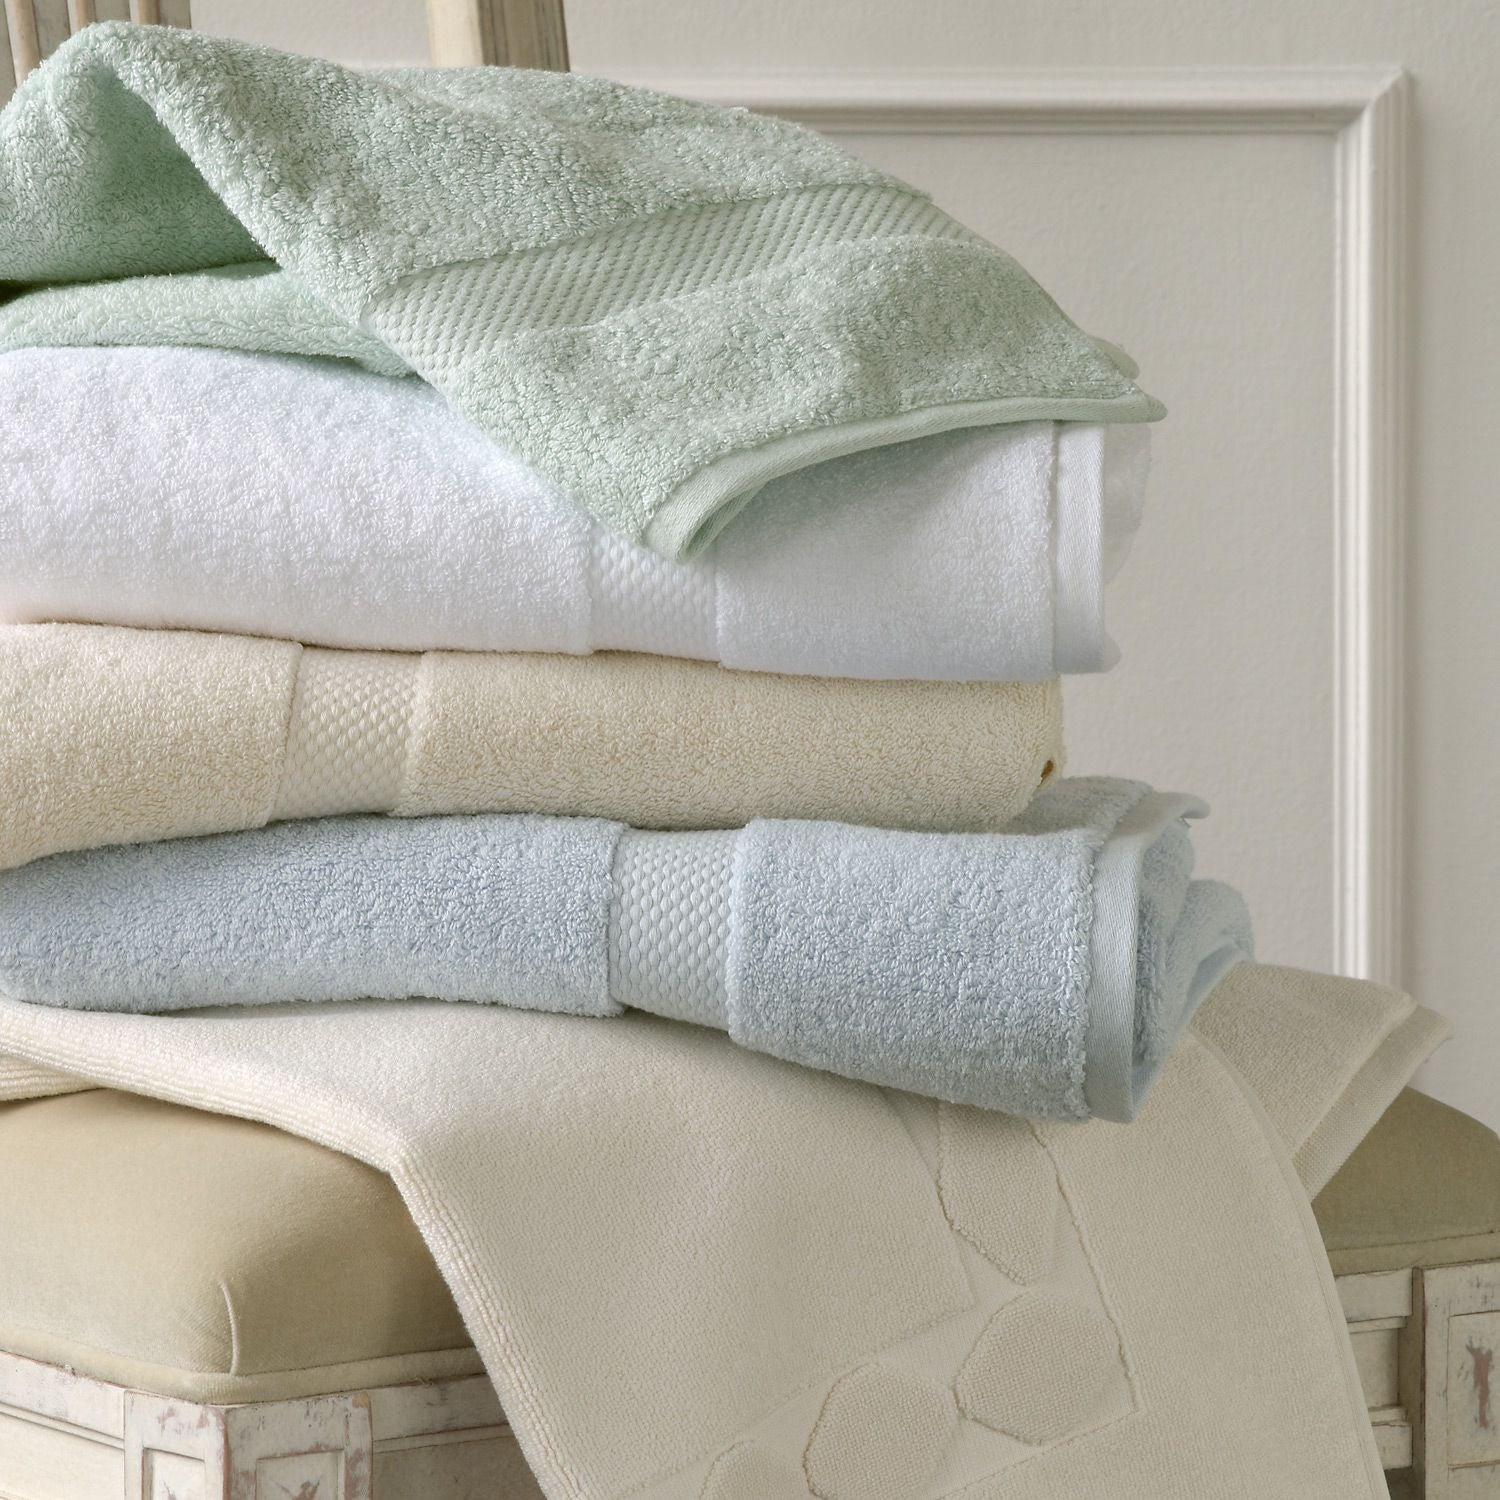 Махровое полотенце постельное белье. Постельное белье и полотенца. Текстиль для дома. Текстиль полотенца. Пледы полотенца постельное белье.